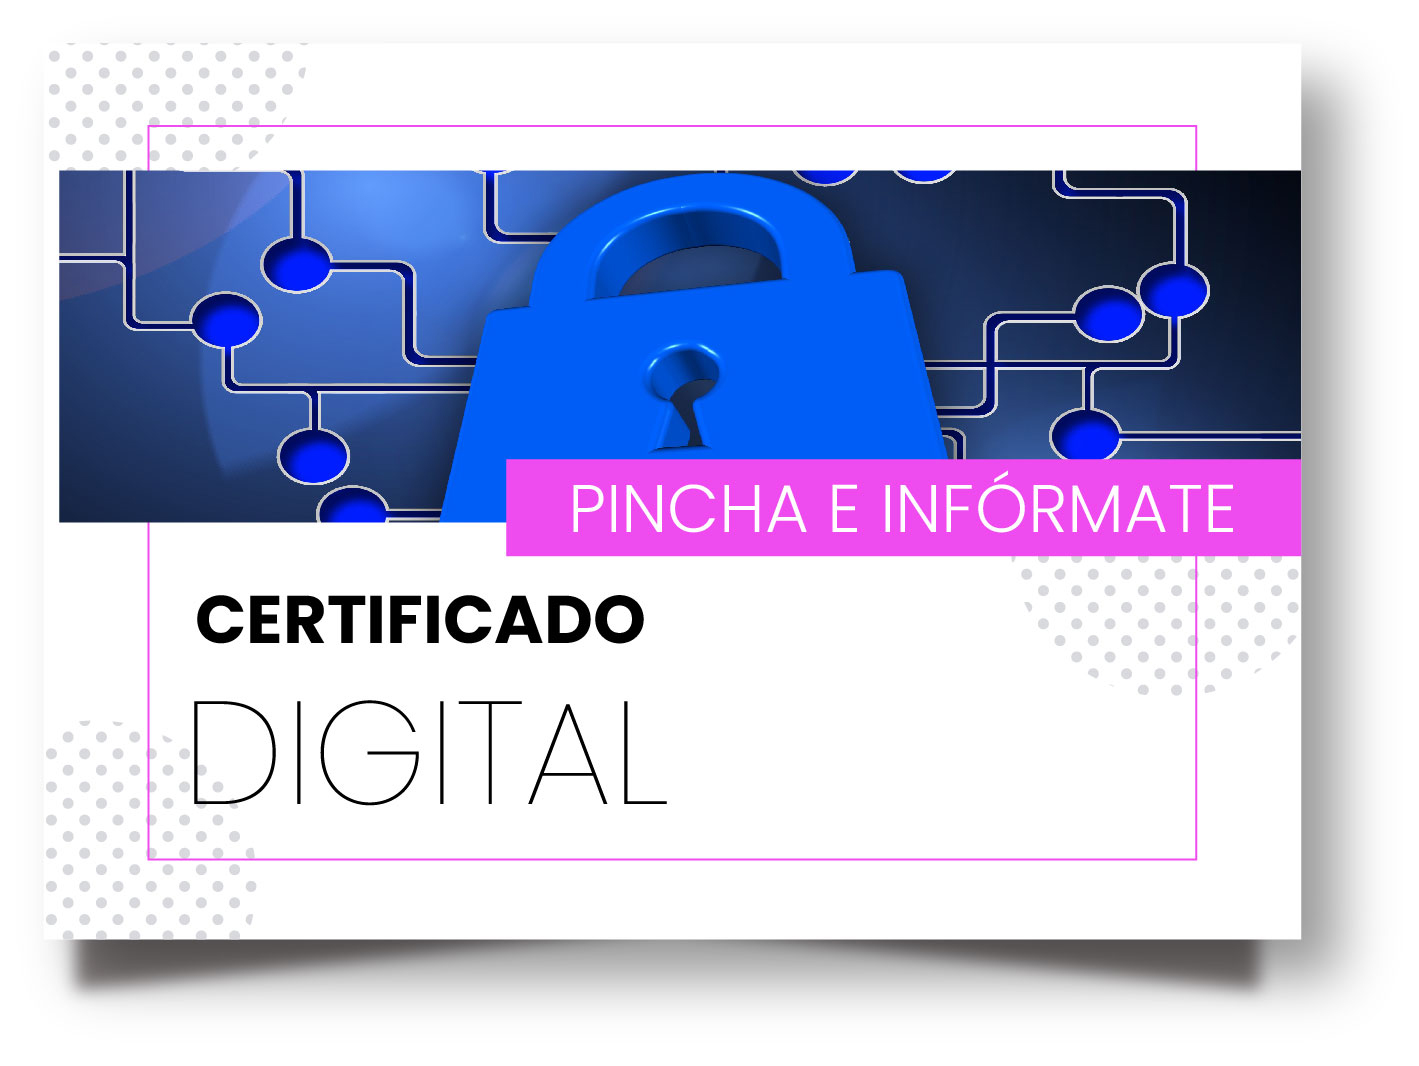 certificado-digital